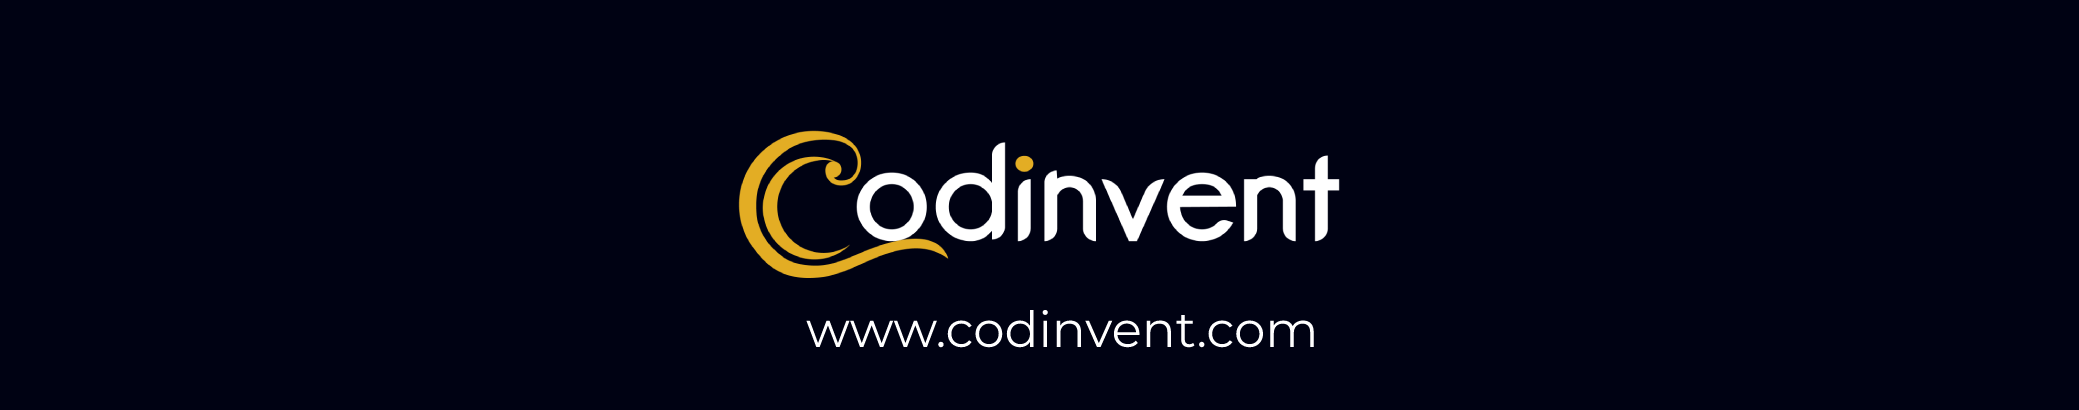 Codinvent Media's profile banner